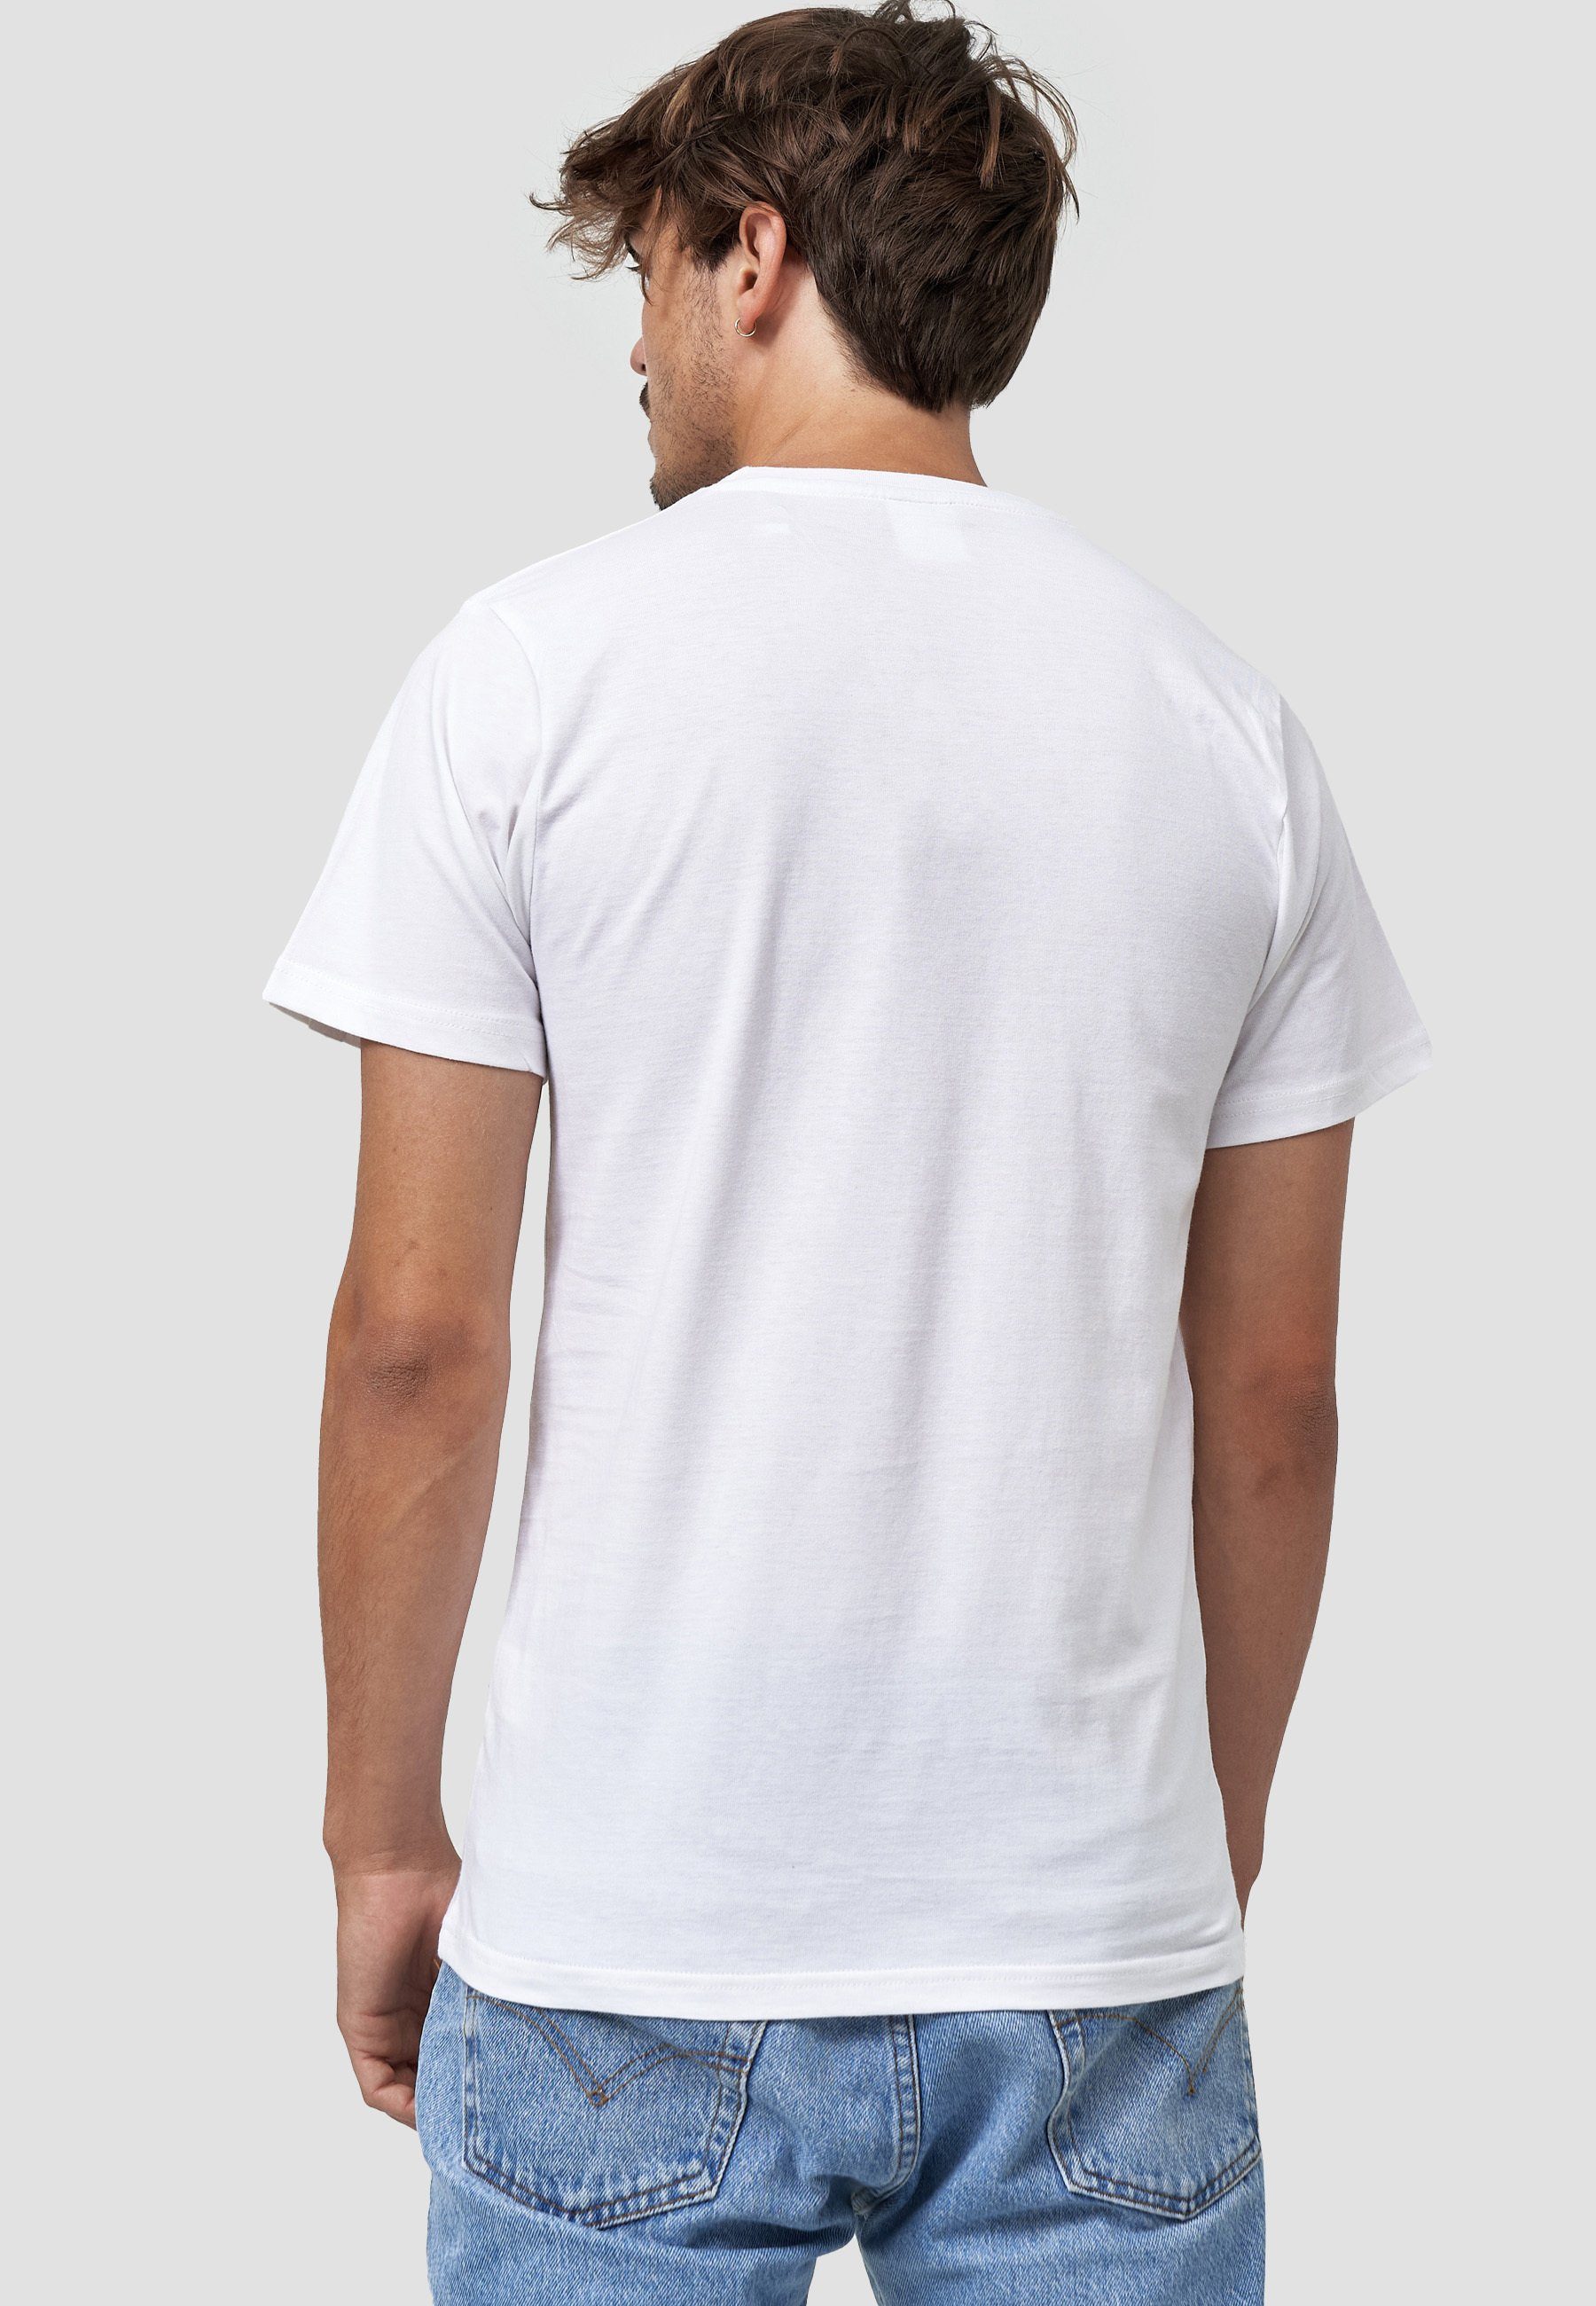 MIKON T-Shirt Fliege GOTS zertifizierte Weiß Bio-Baumwolle